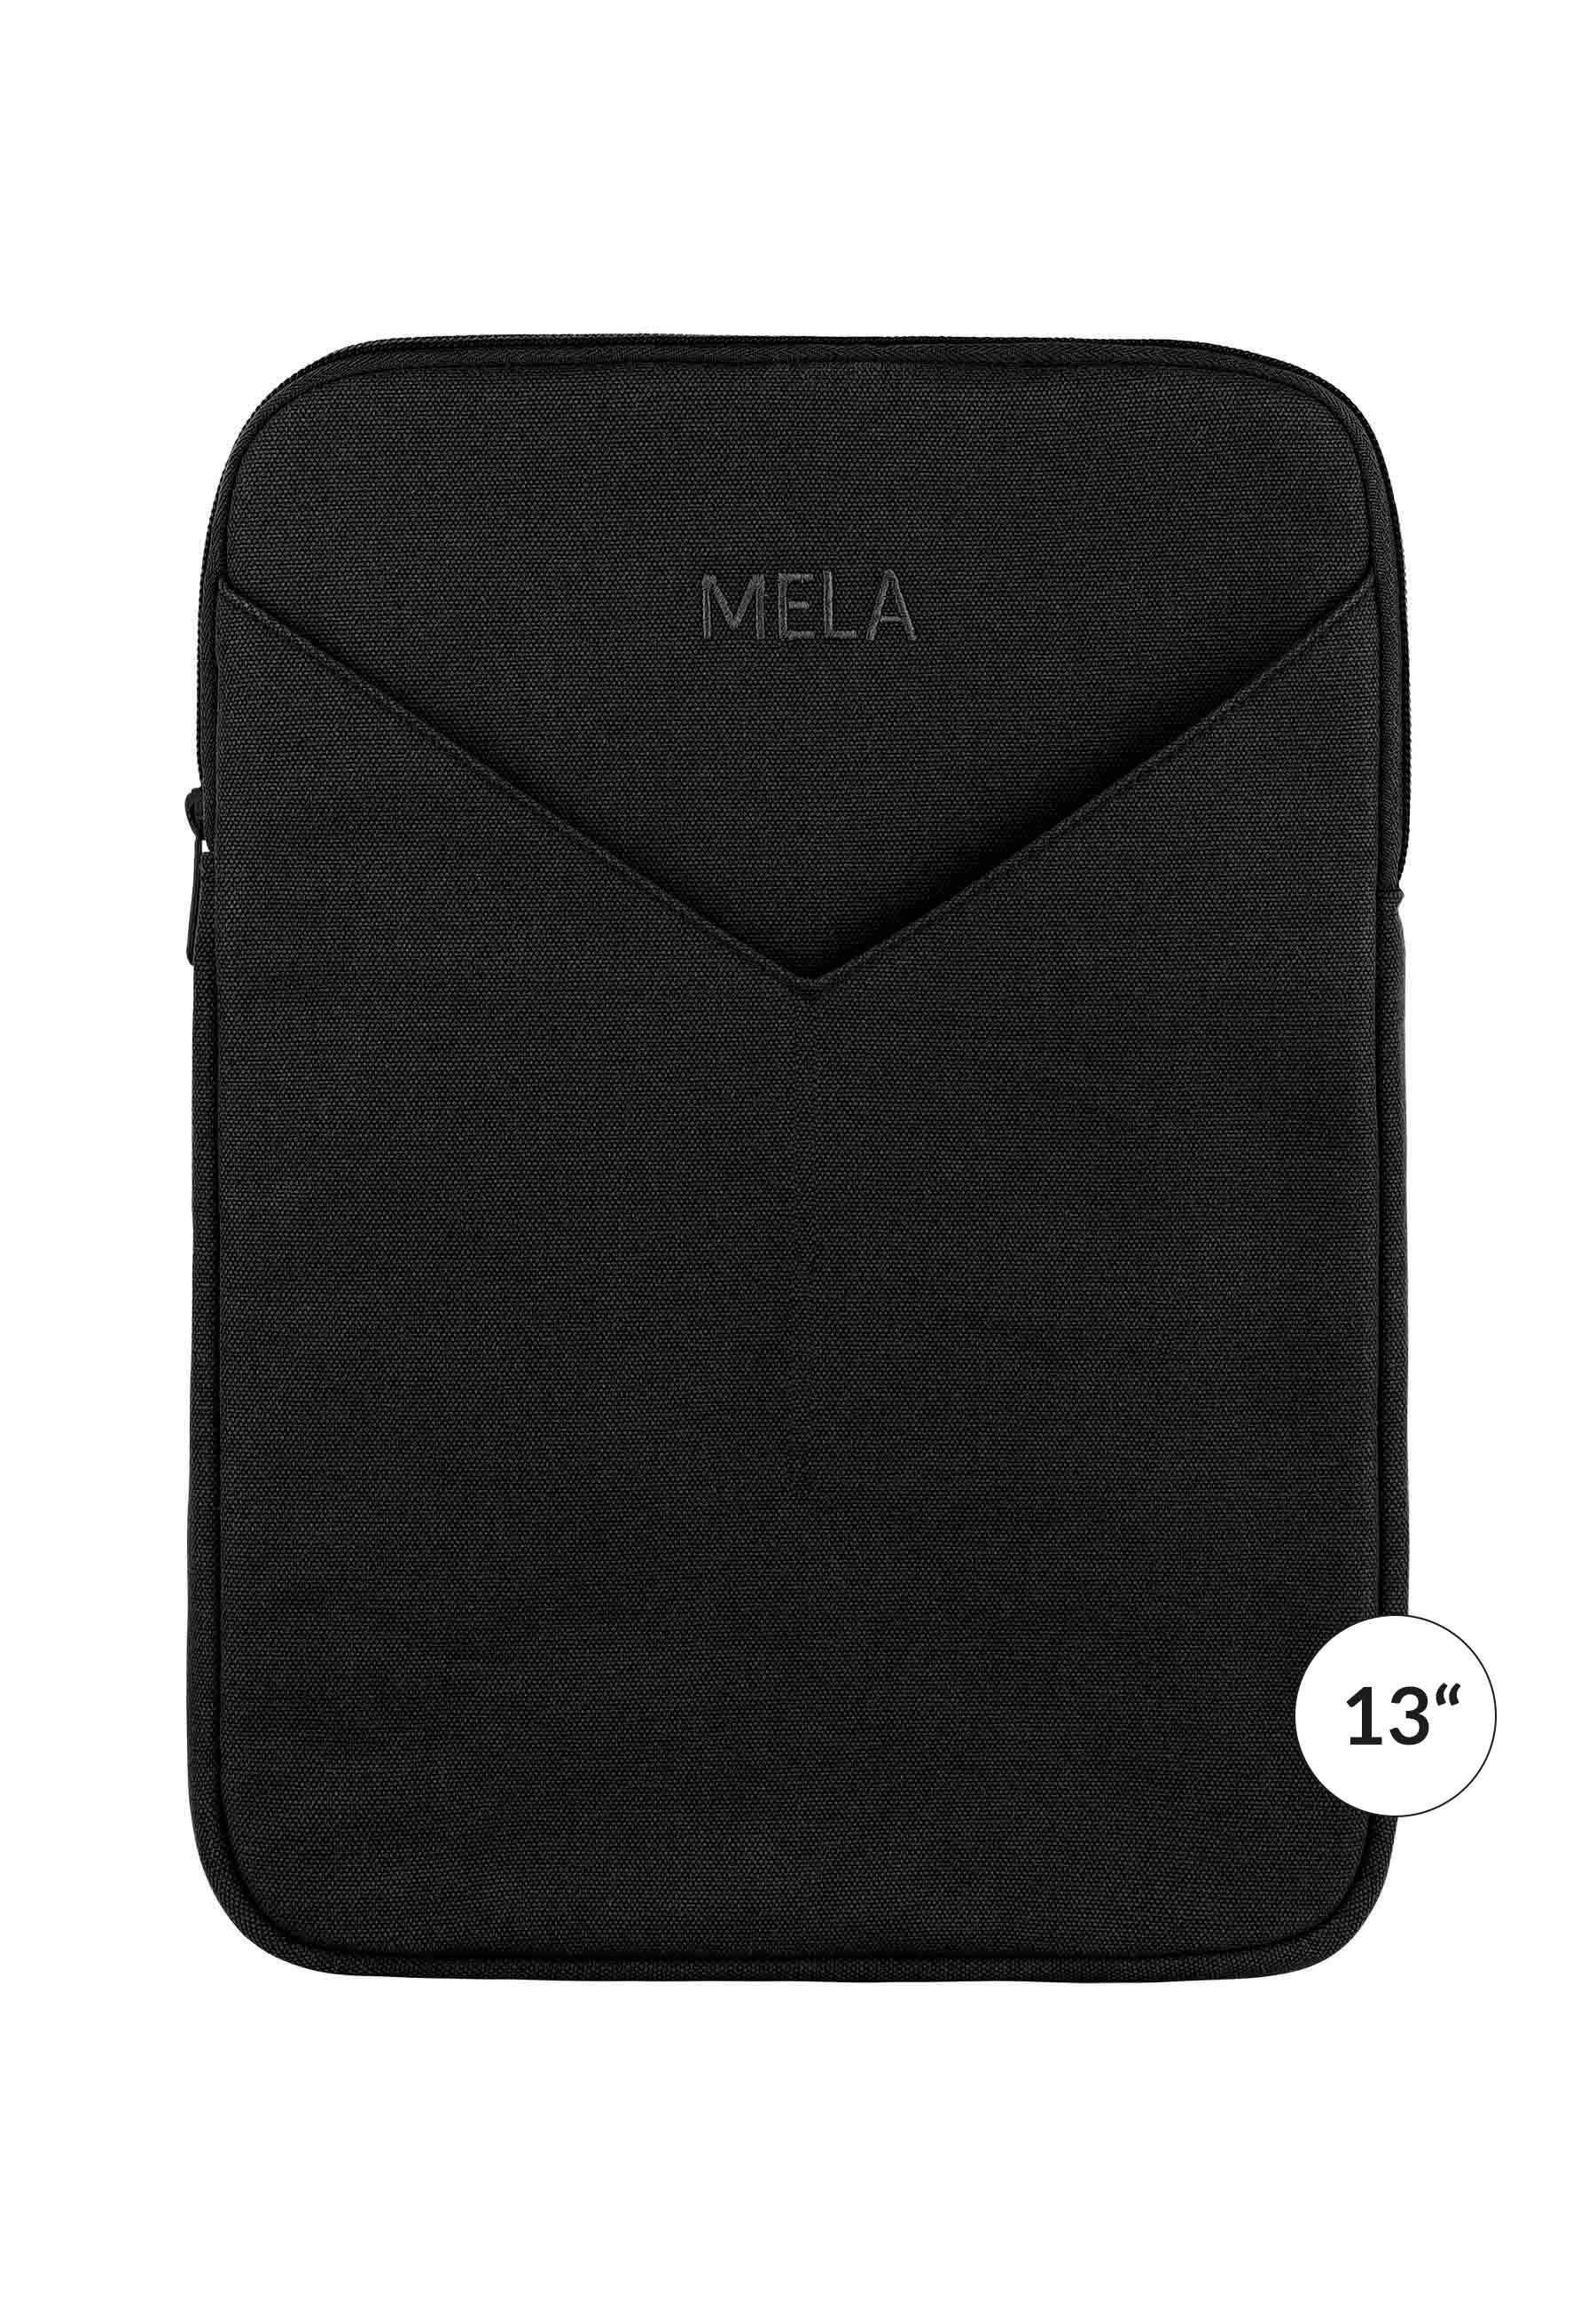 MELA Laptoptasche Laptophülle SUMIT, Praktische Außentasche schwarz